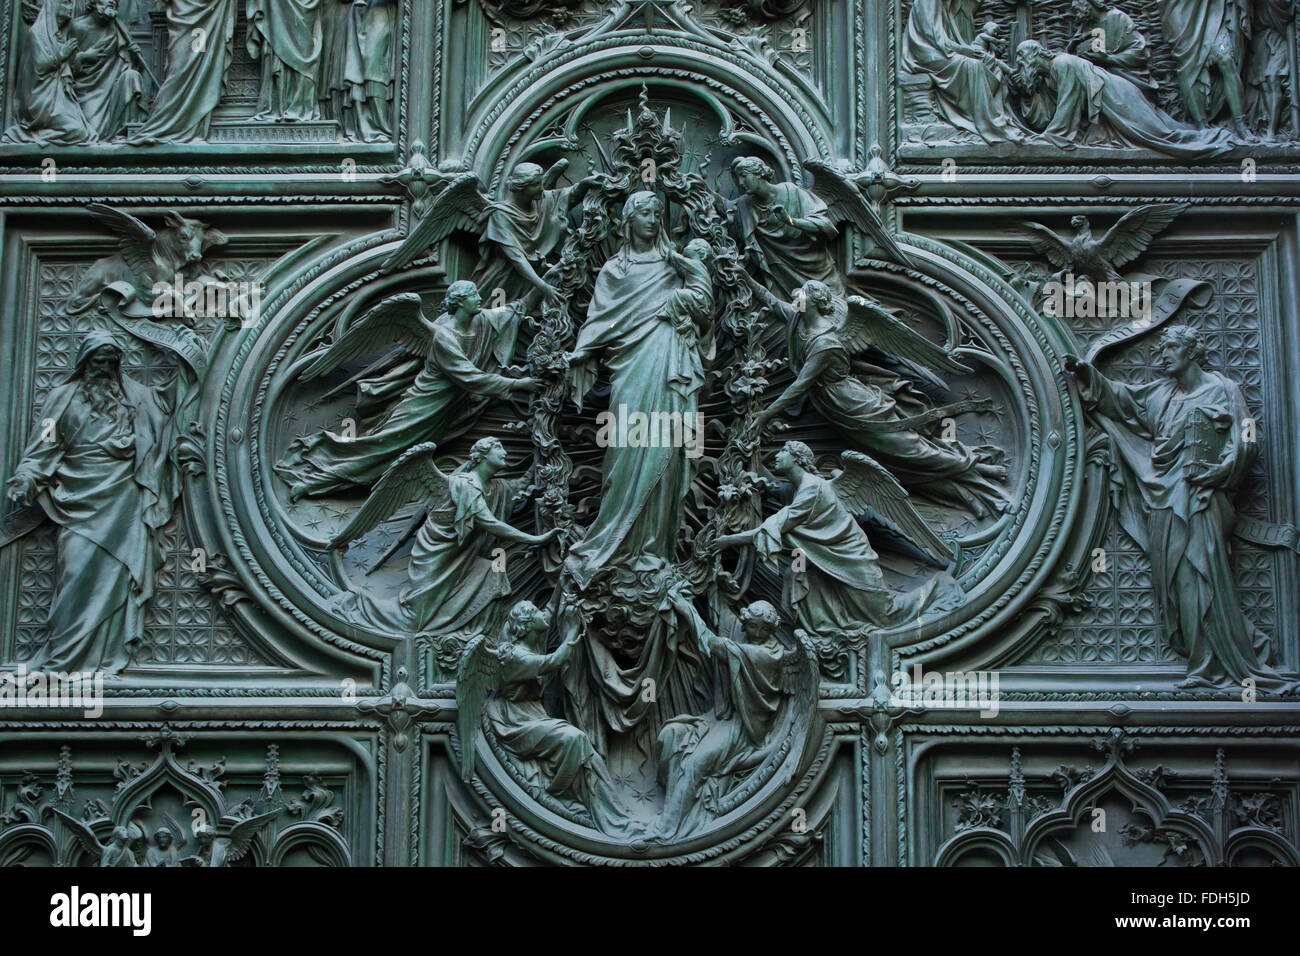 Assomption de la Vierge Marie. Détail de la porte de bronze de la principale cathédrale de Milan (Duomo di Milano) à Milan, Italie. Evangeli Banque D'Images